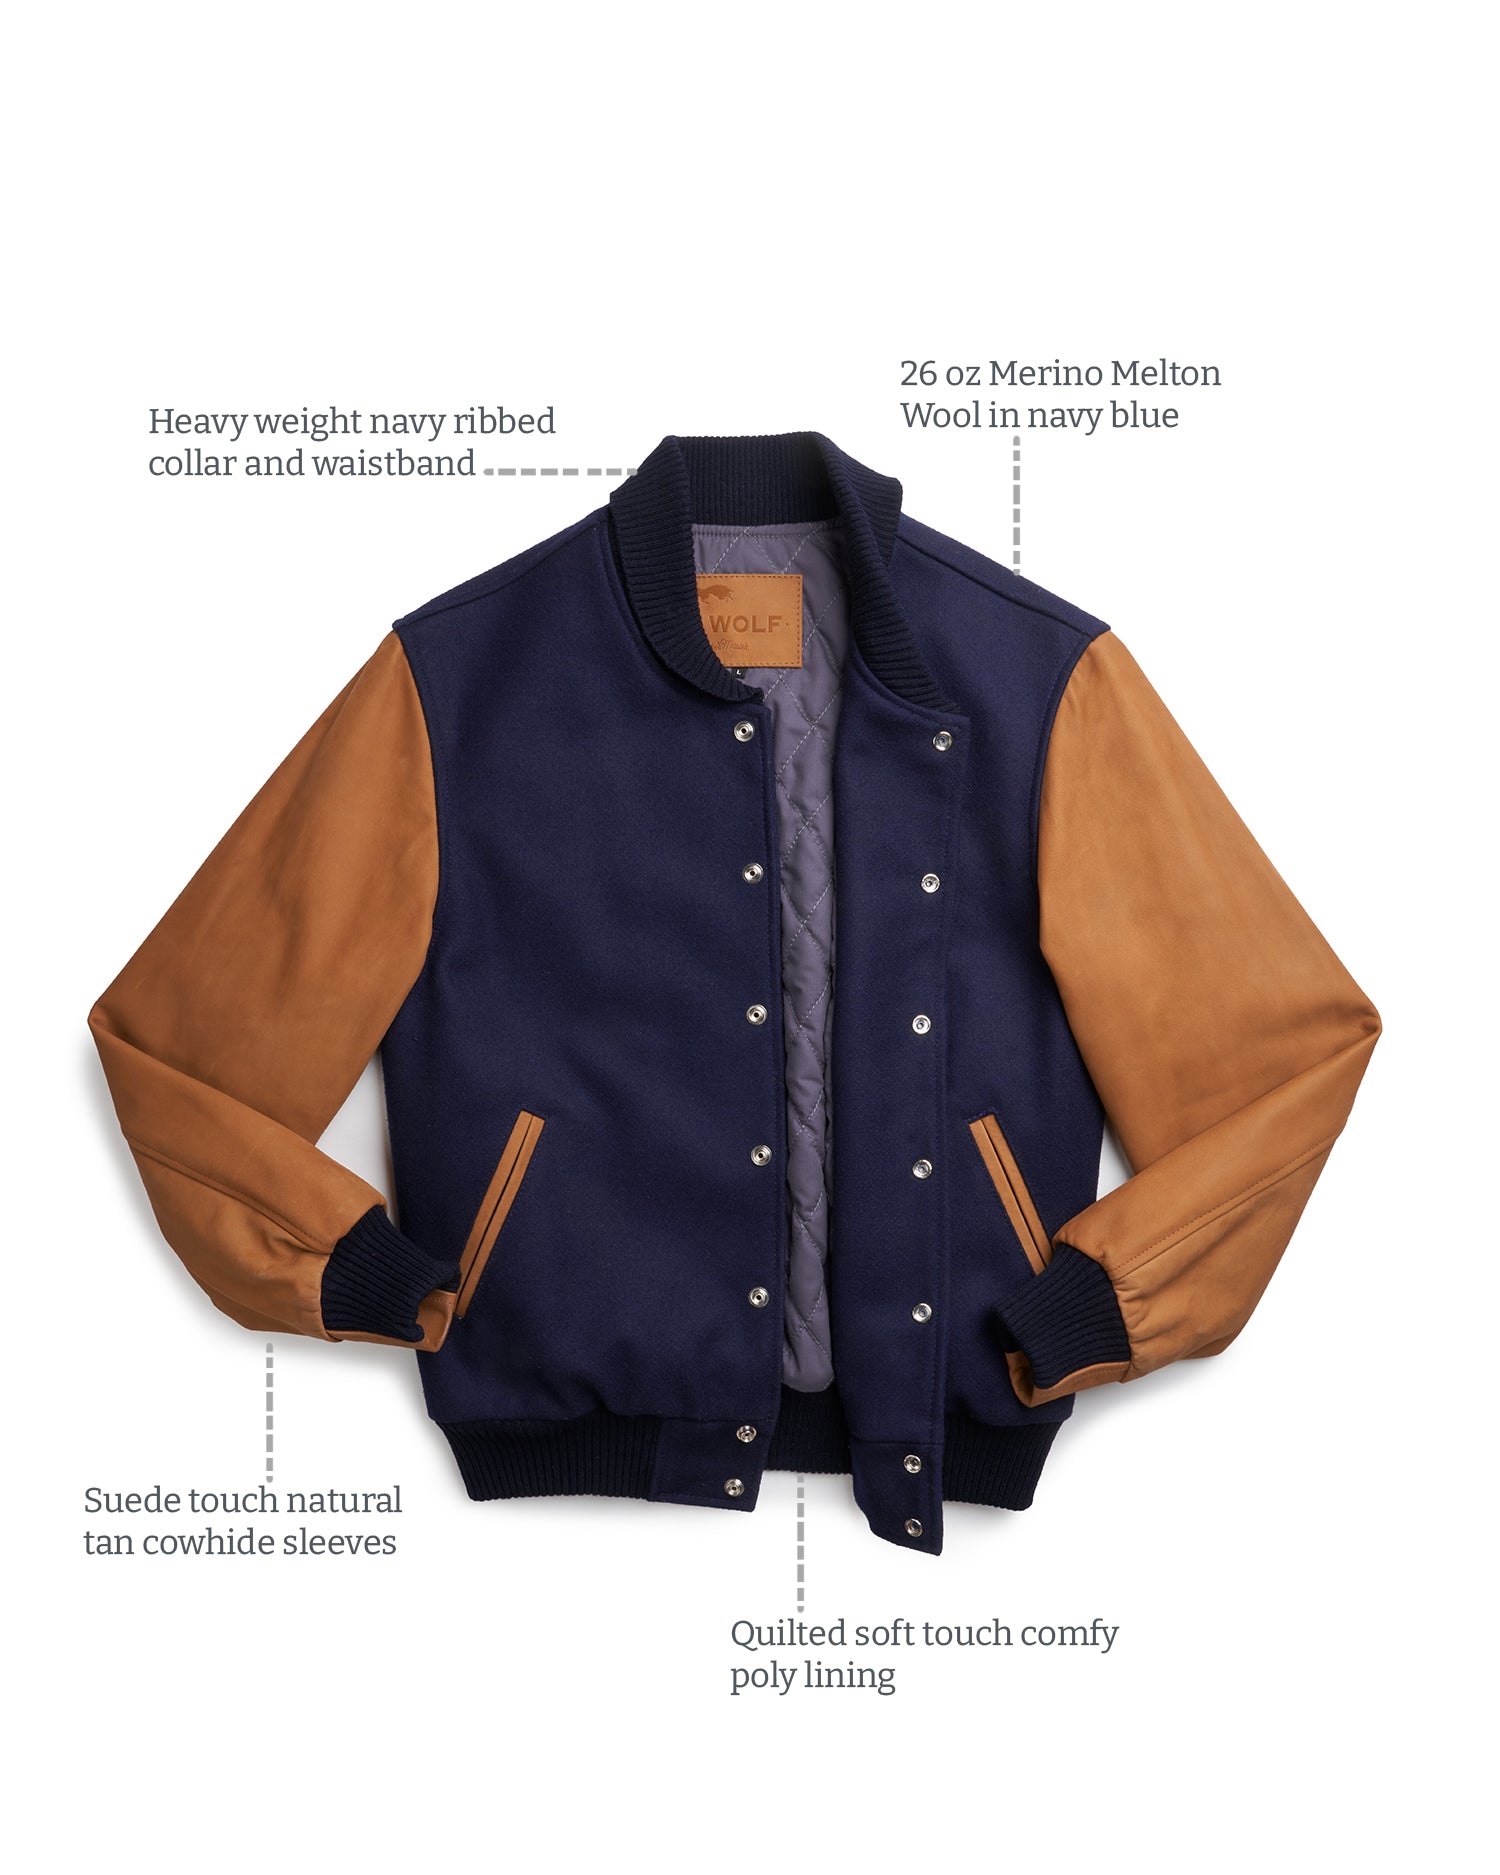 Details of Baker Mount Varsity Jacket